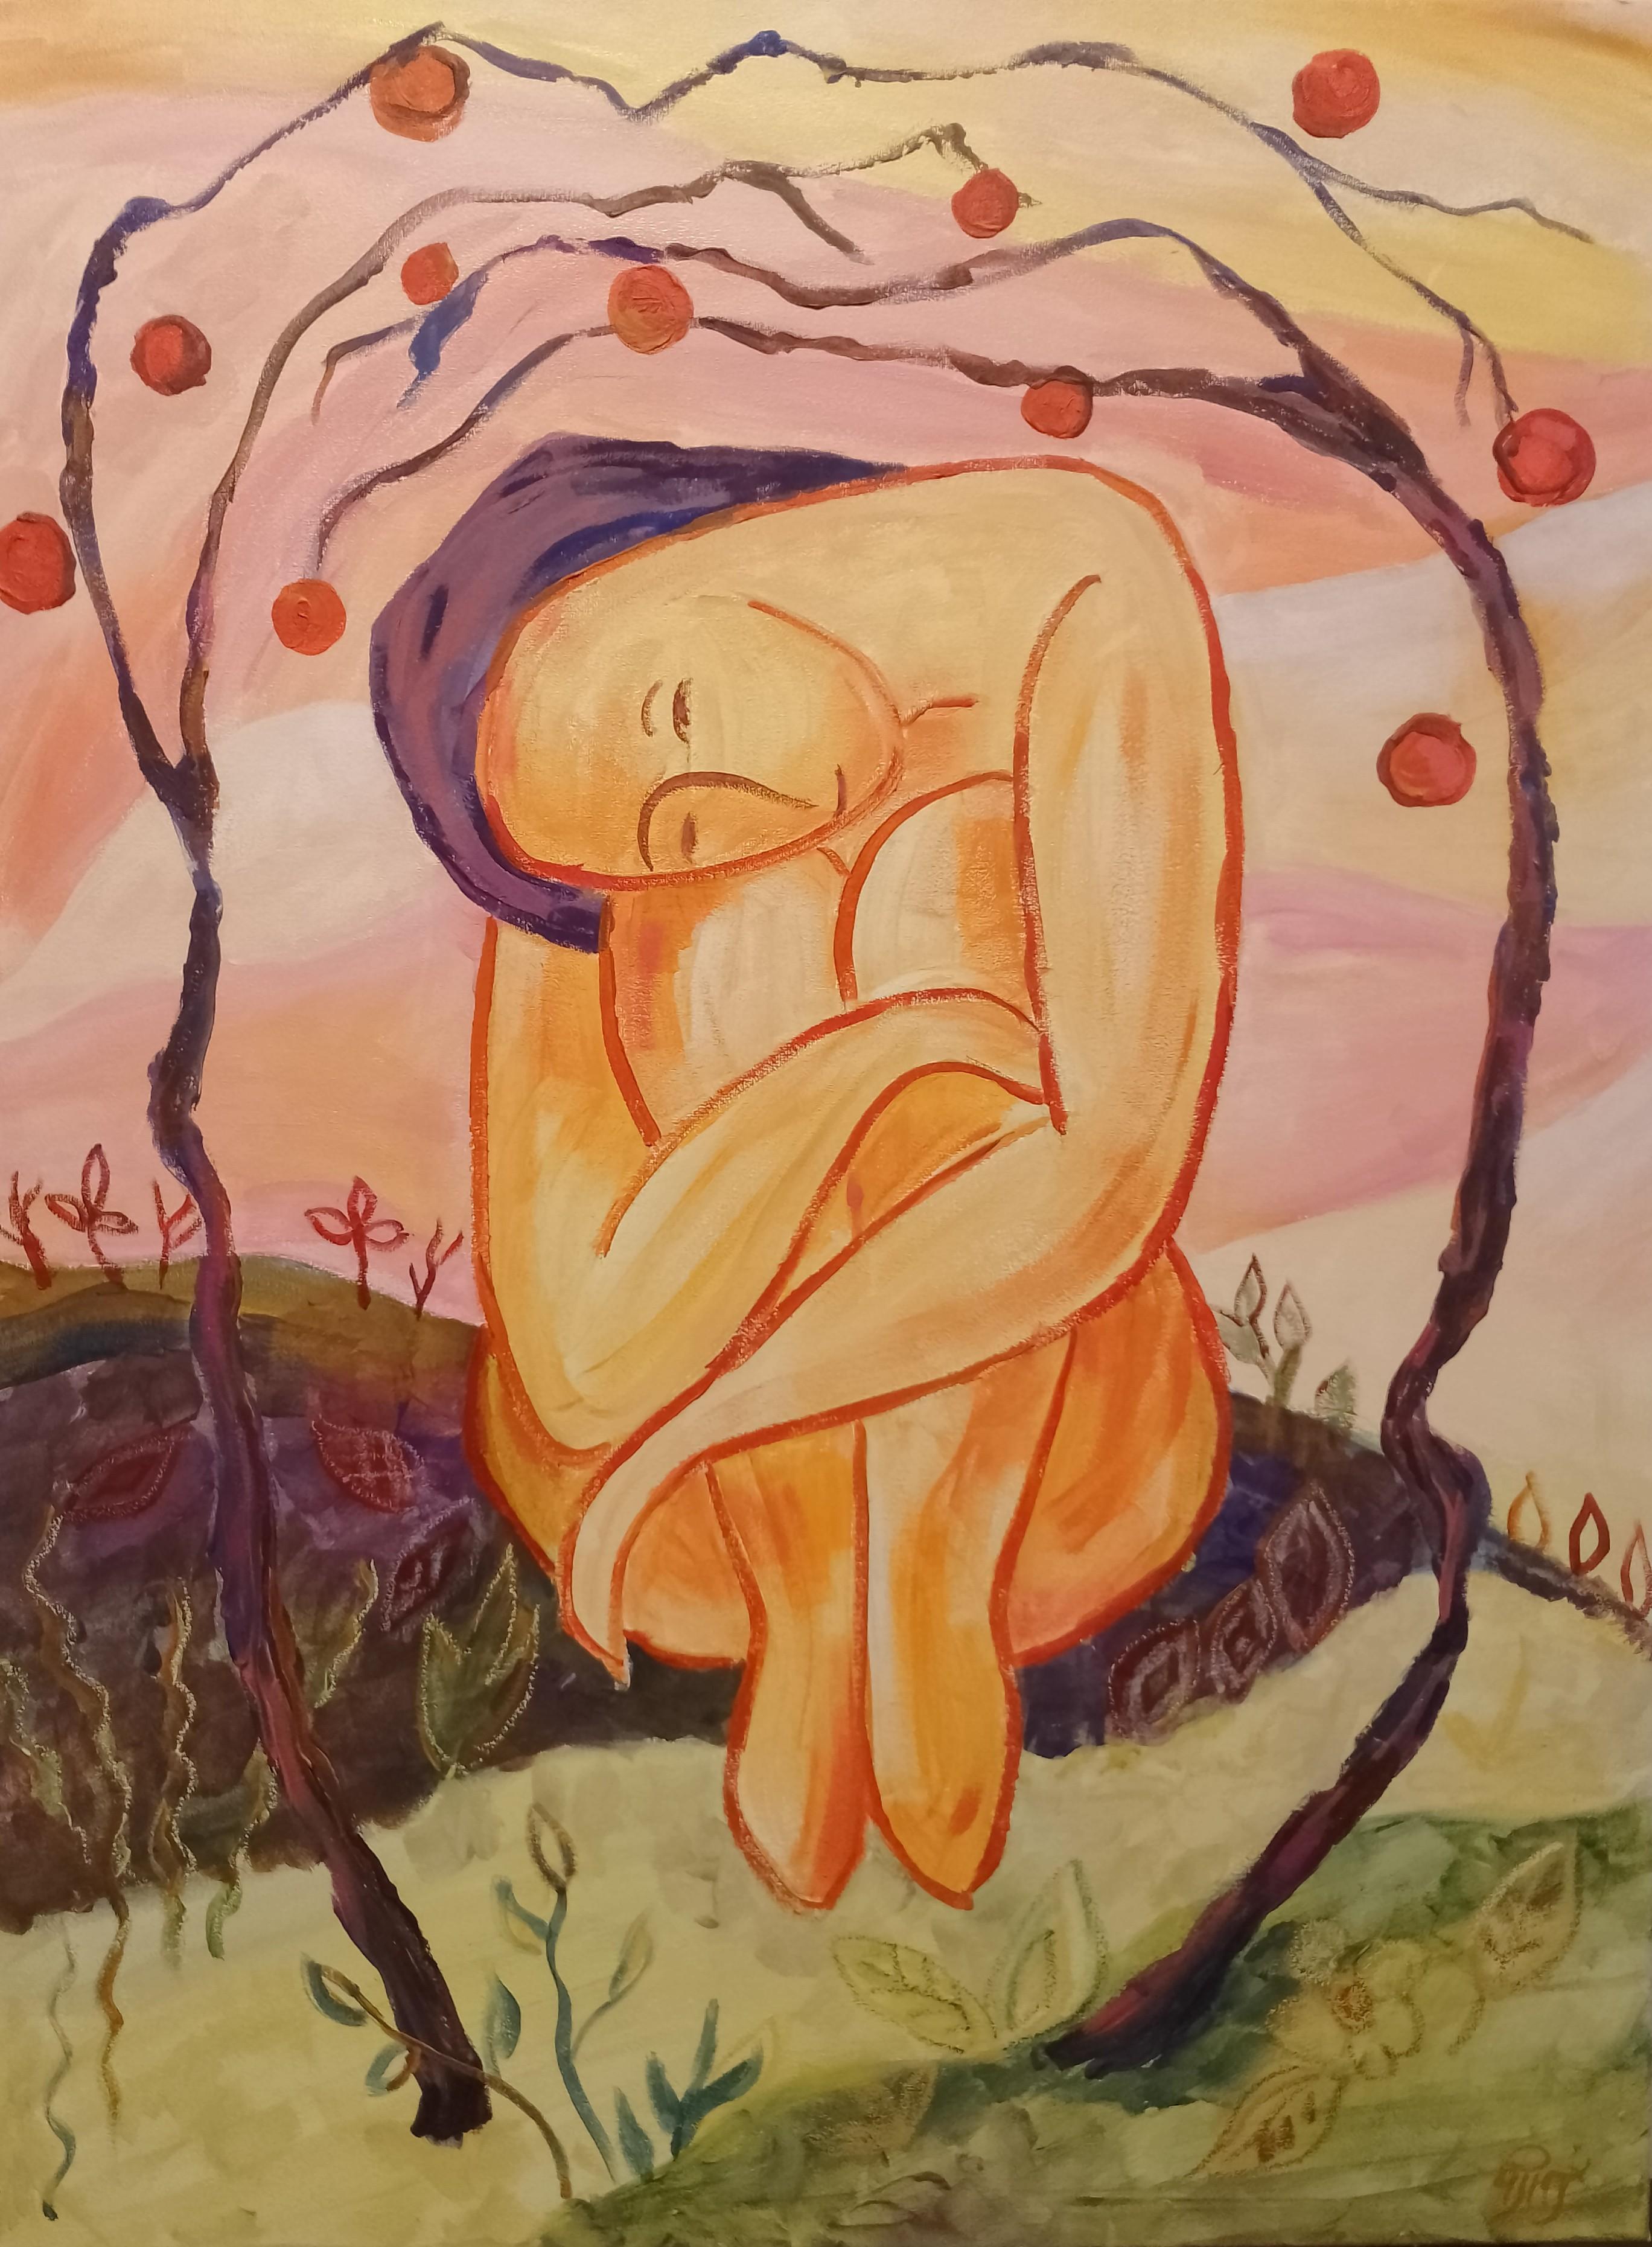 In der beschwörenden Stille von "Whispers of Ancestry", dem jüngsten Gemälde meiner Serie "Thoughts", stelle ich eine junge Frau dar, die in einer Geste der Kontemplation und des Selbstschutzes die Knie an die Brust gezogen hat. Ihre nackte Form